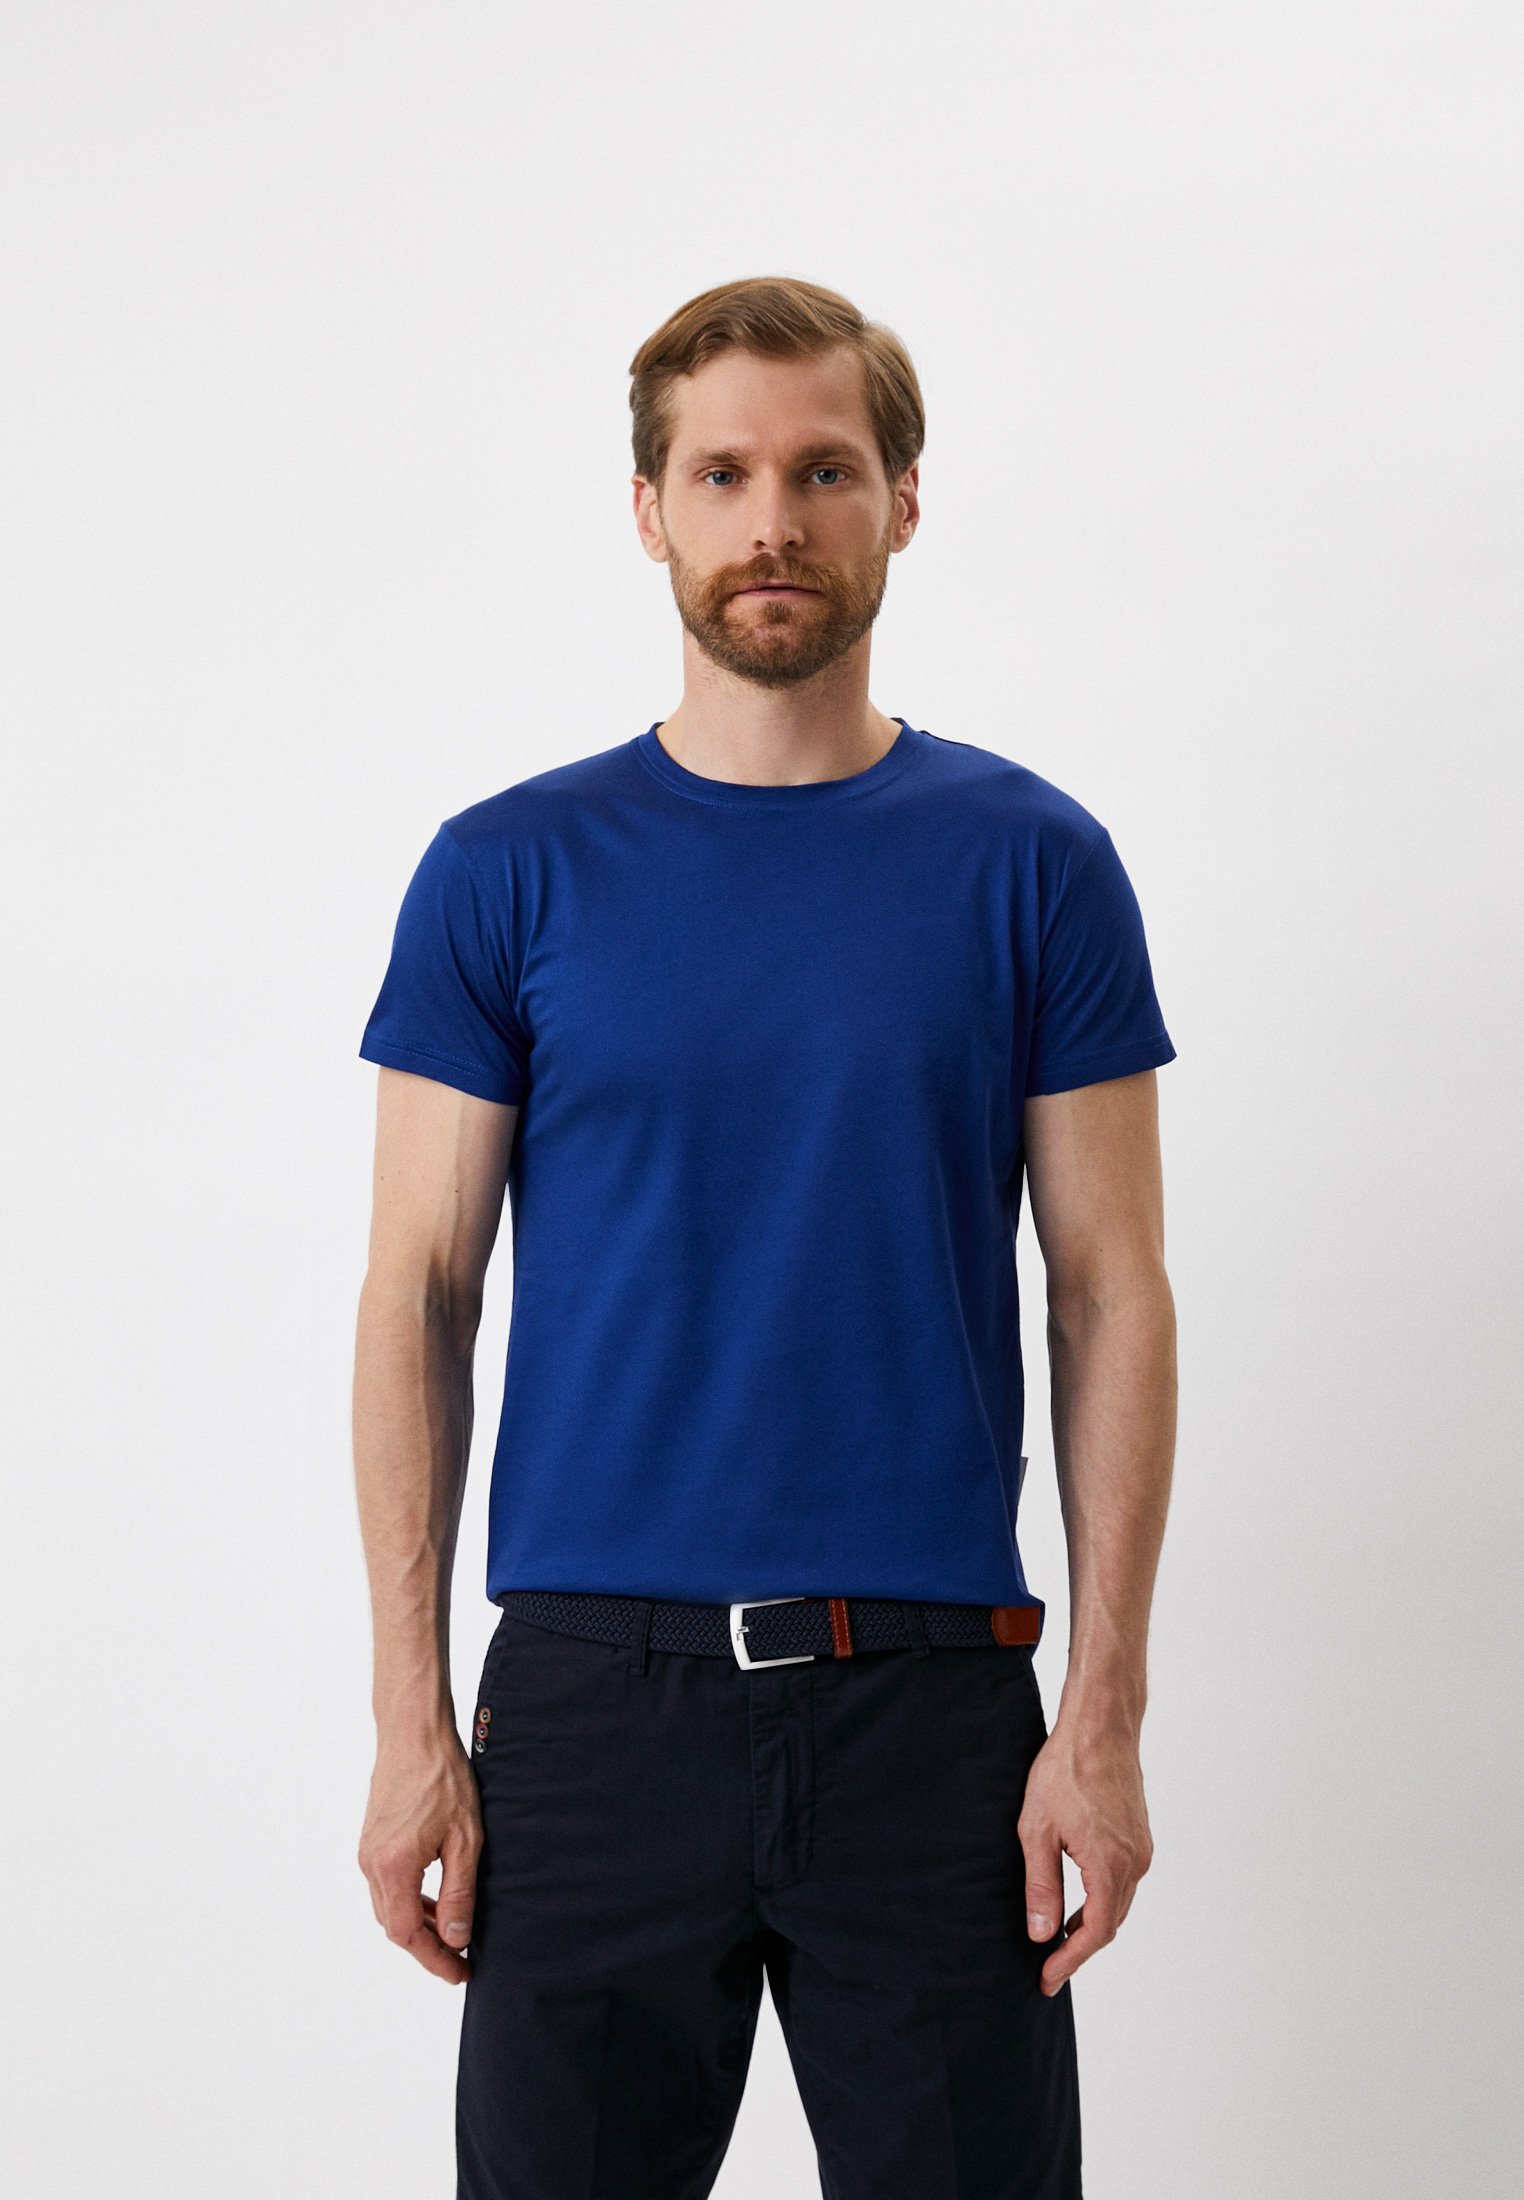 Мужская футболка Baldinini (Балдинини) M603: изображение 1